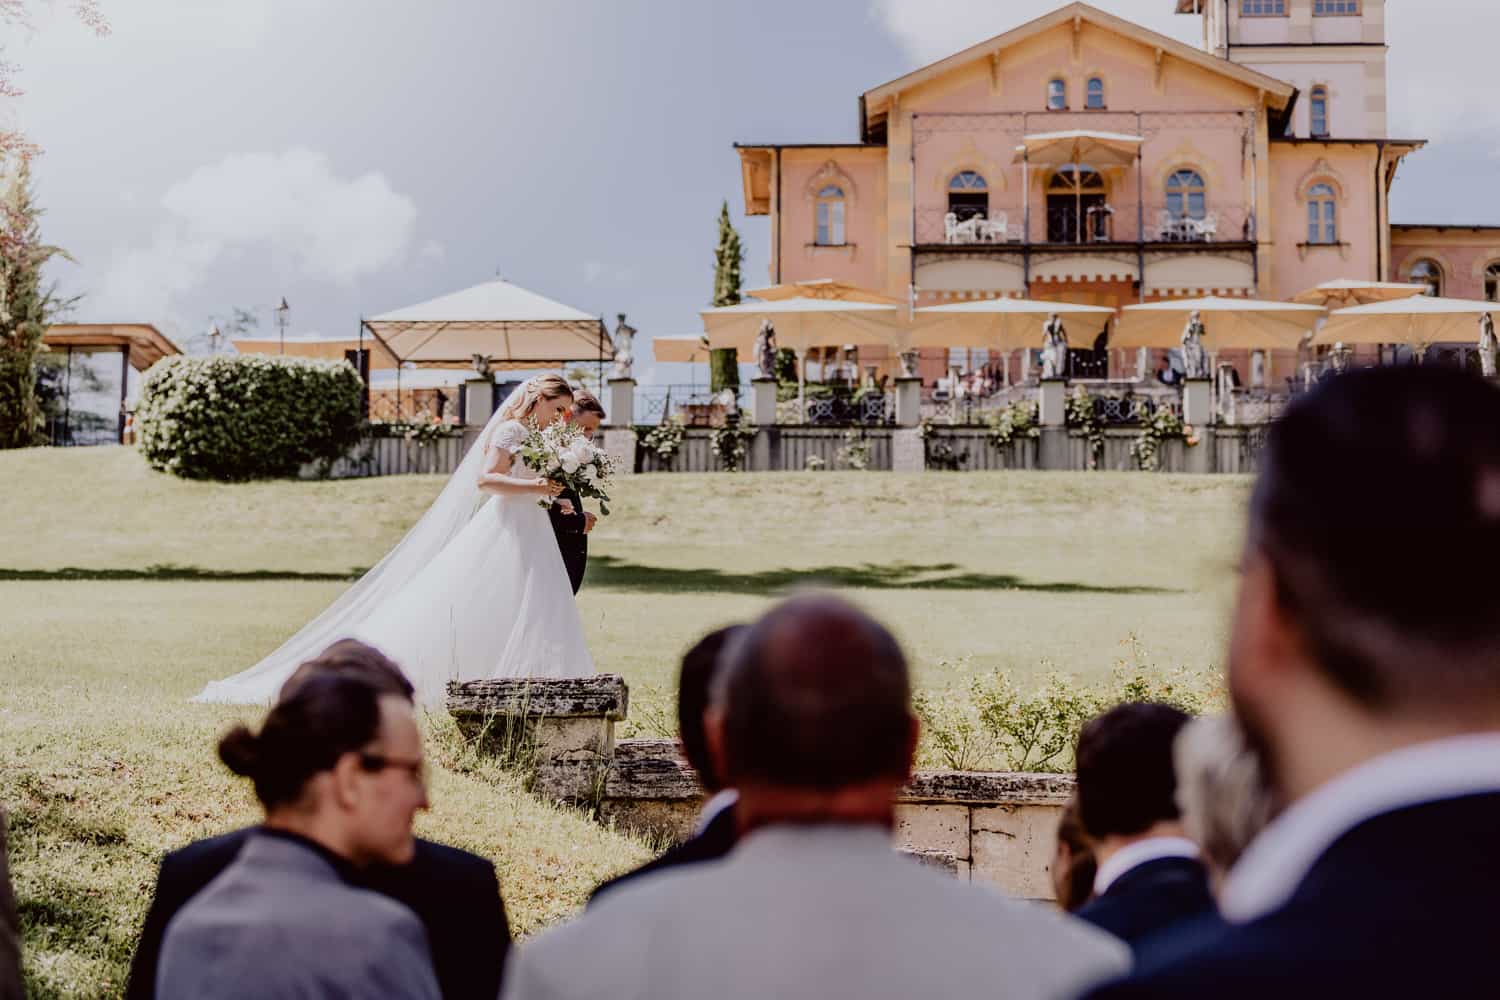 Braut geht mit Brautvater zur Trauung. Man sieht im Hintergrund die La Villa am Starnberger See. Im Vordergrund sieht man Hochzeitsgäste, die zur Braut schauen. Es ist ein sonniger Tag mit Blauem Himmel. Das Foto wurde vom Hochzeitsfotograf La Villa in Farbe aufgenommen.